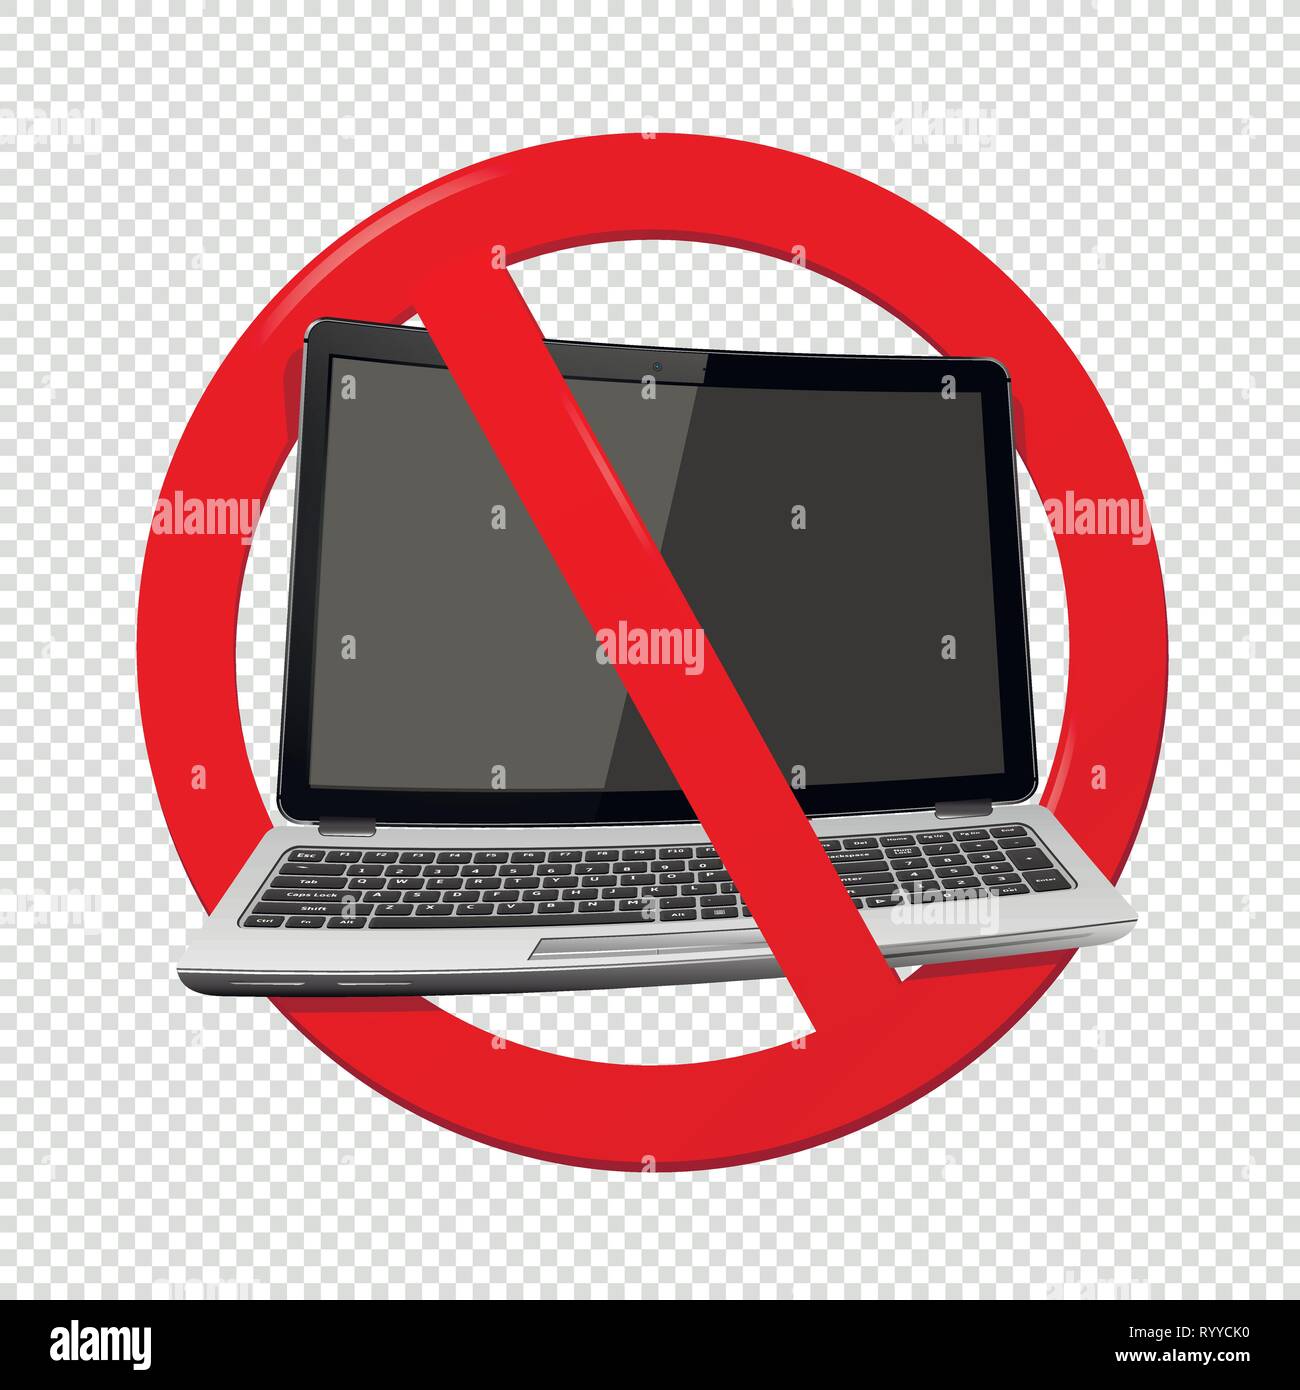 Nicht verwenden, Laptop-Verbotsschild auf transparentem Hintergrund isoliert. Vector Illustration. Stock Vektor